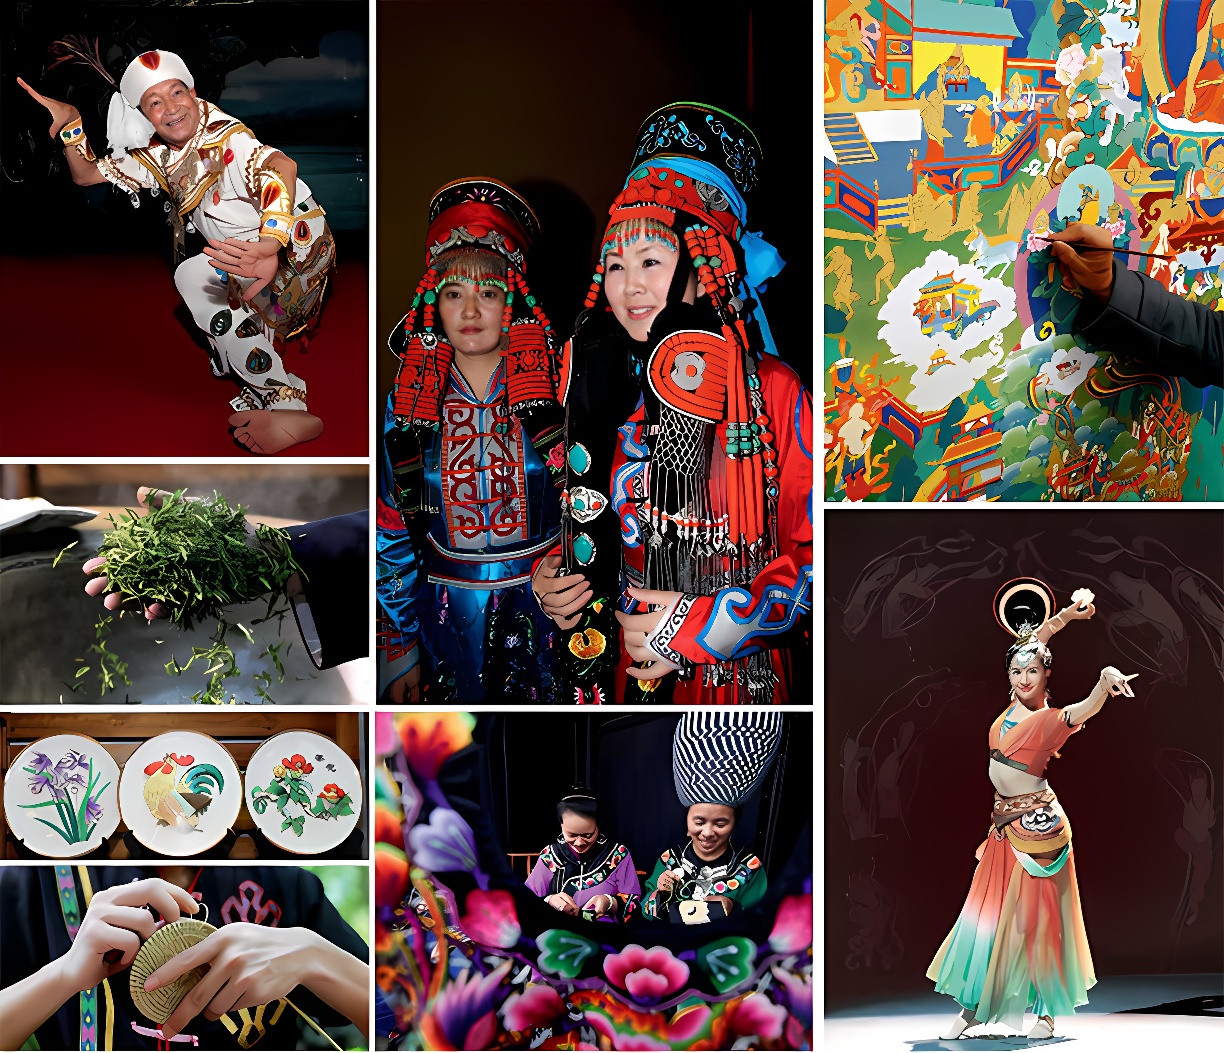 图片展示多元文化场景，包括民族服饰、舞蹈表演、绘画艺术、手工艺制作和传统草药采集。色彩鲜艳，活动丰富多彩。